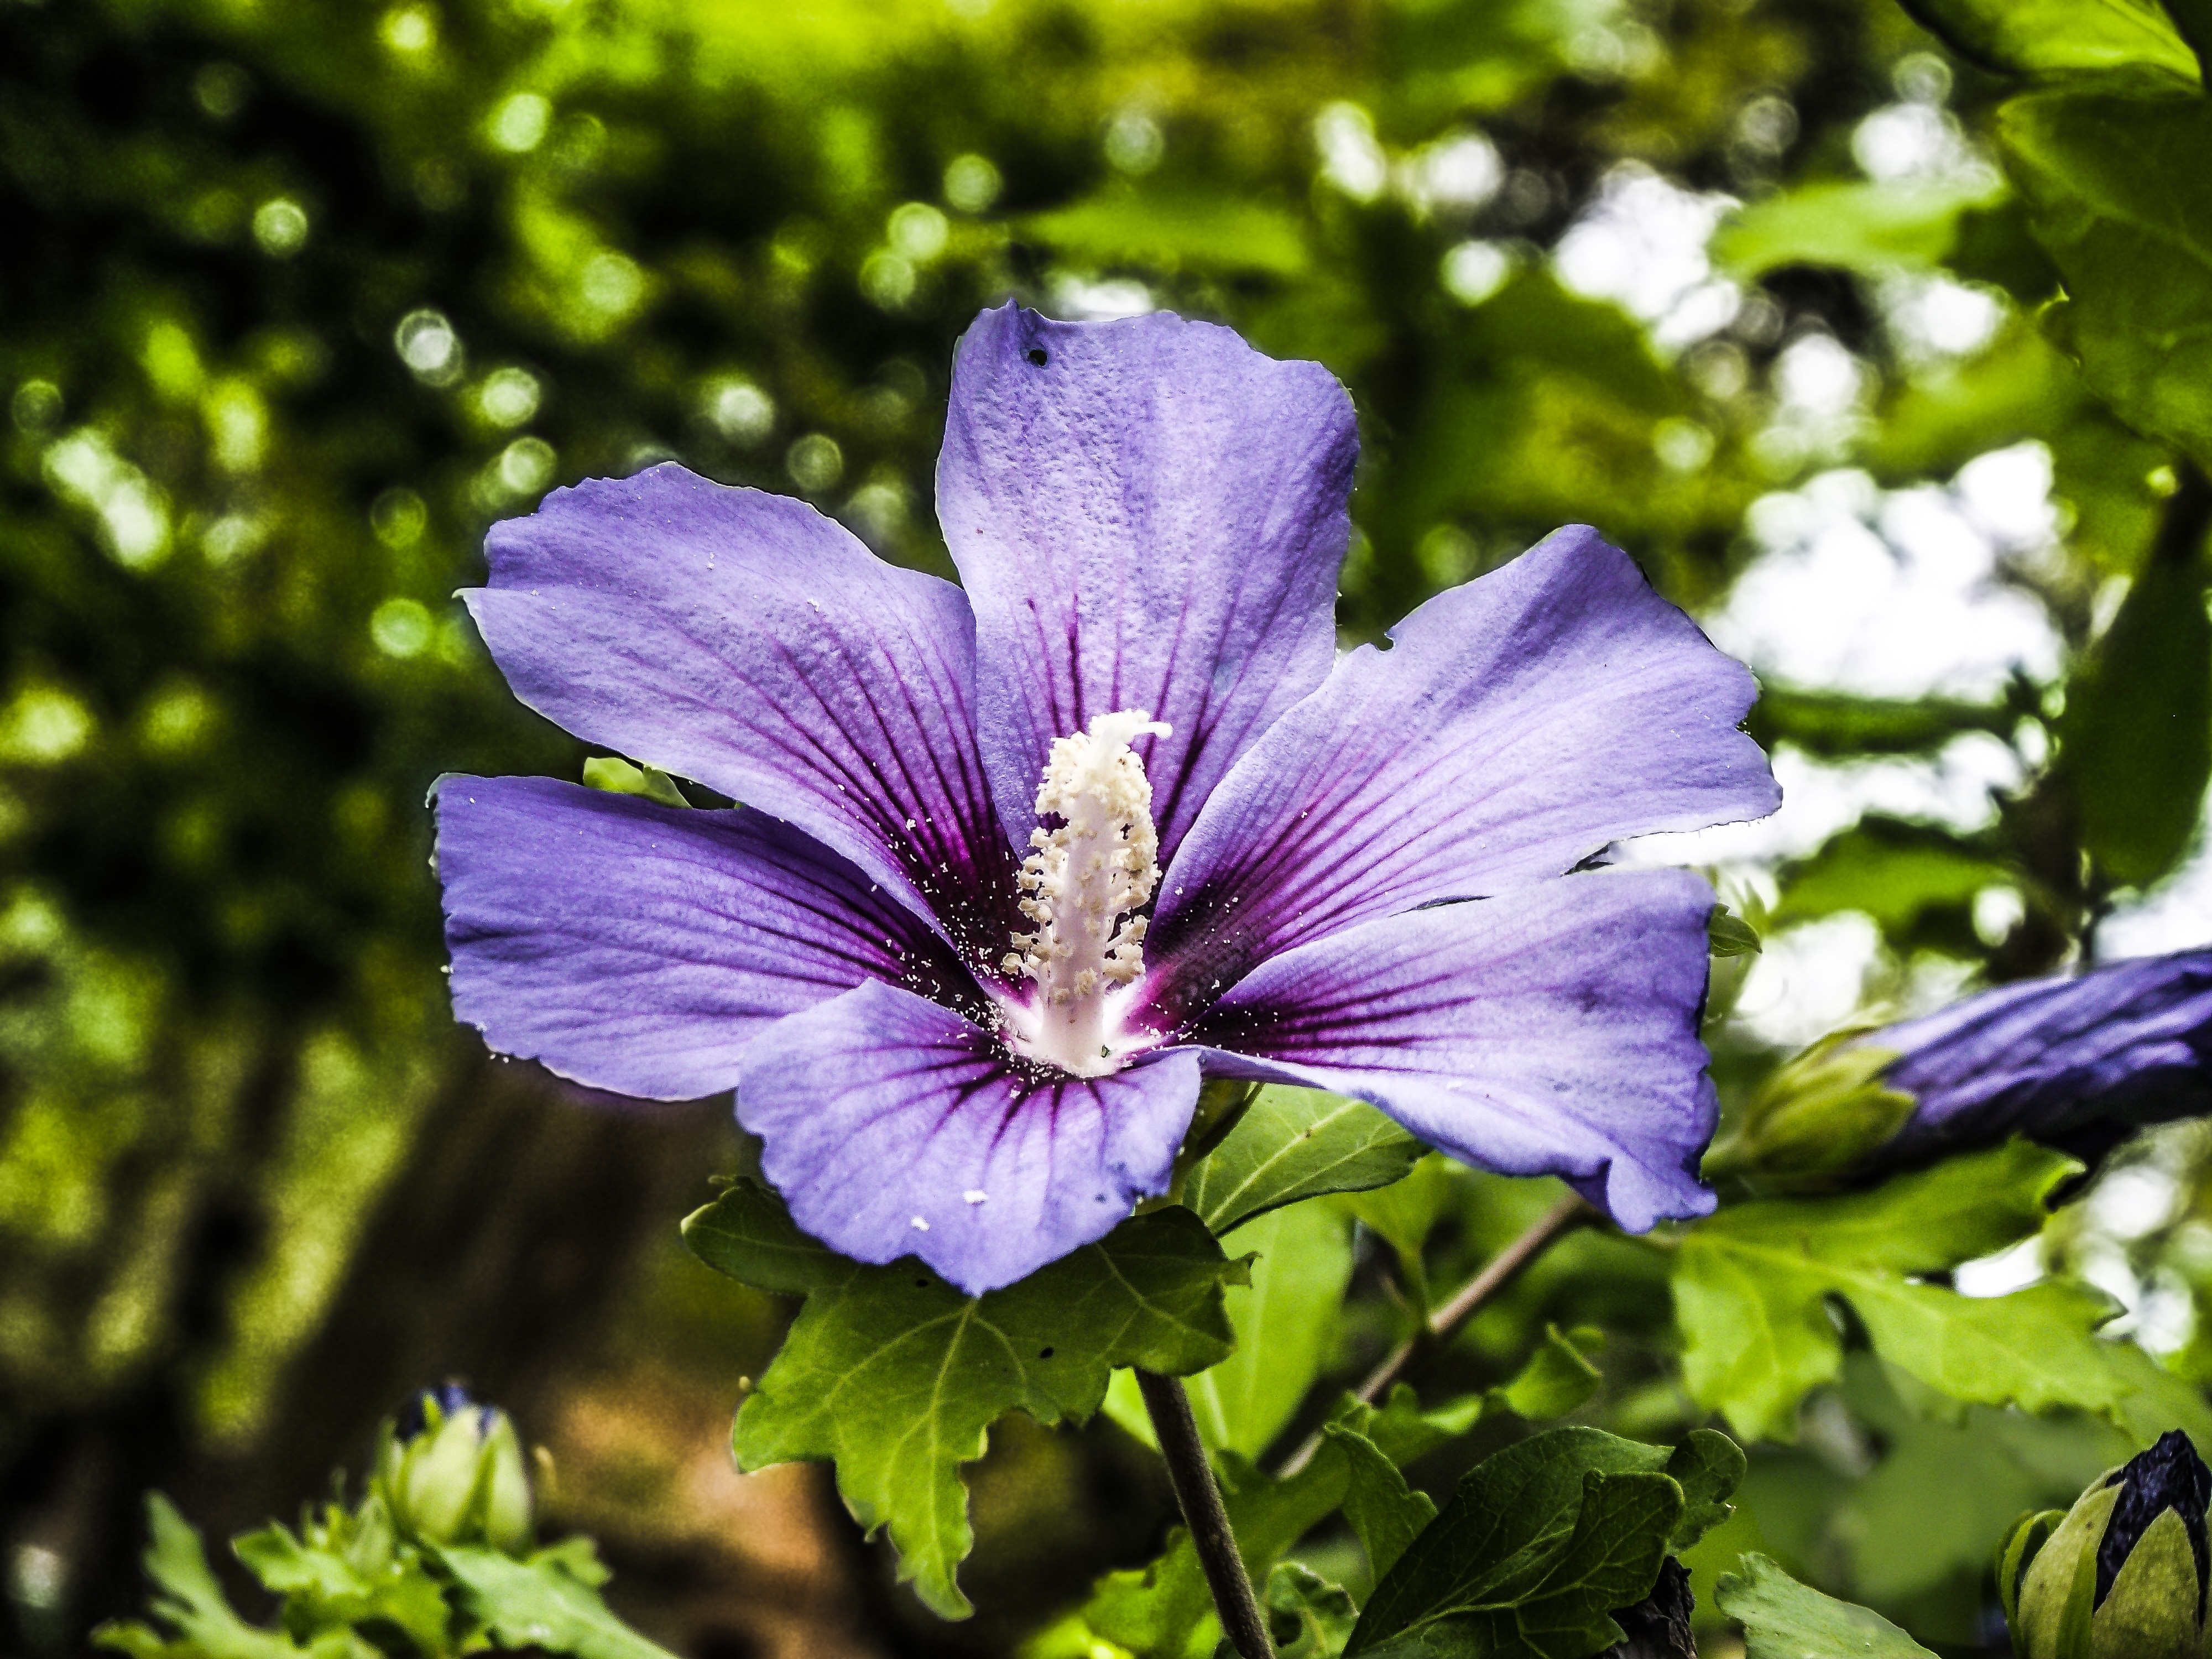 purple 6 petaled flower